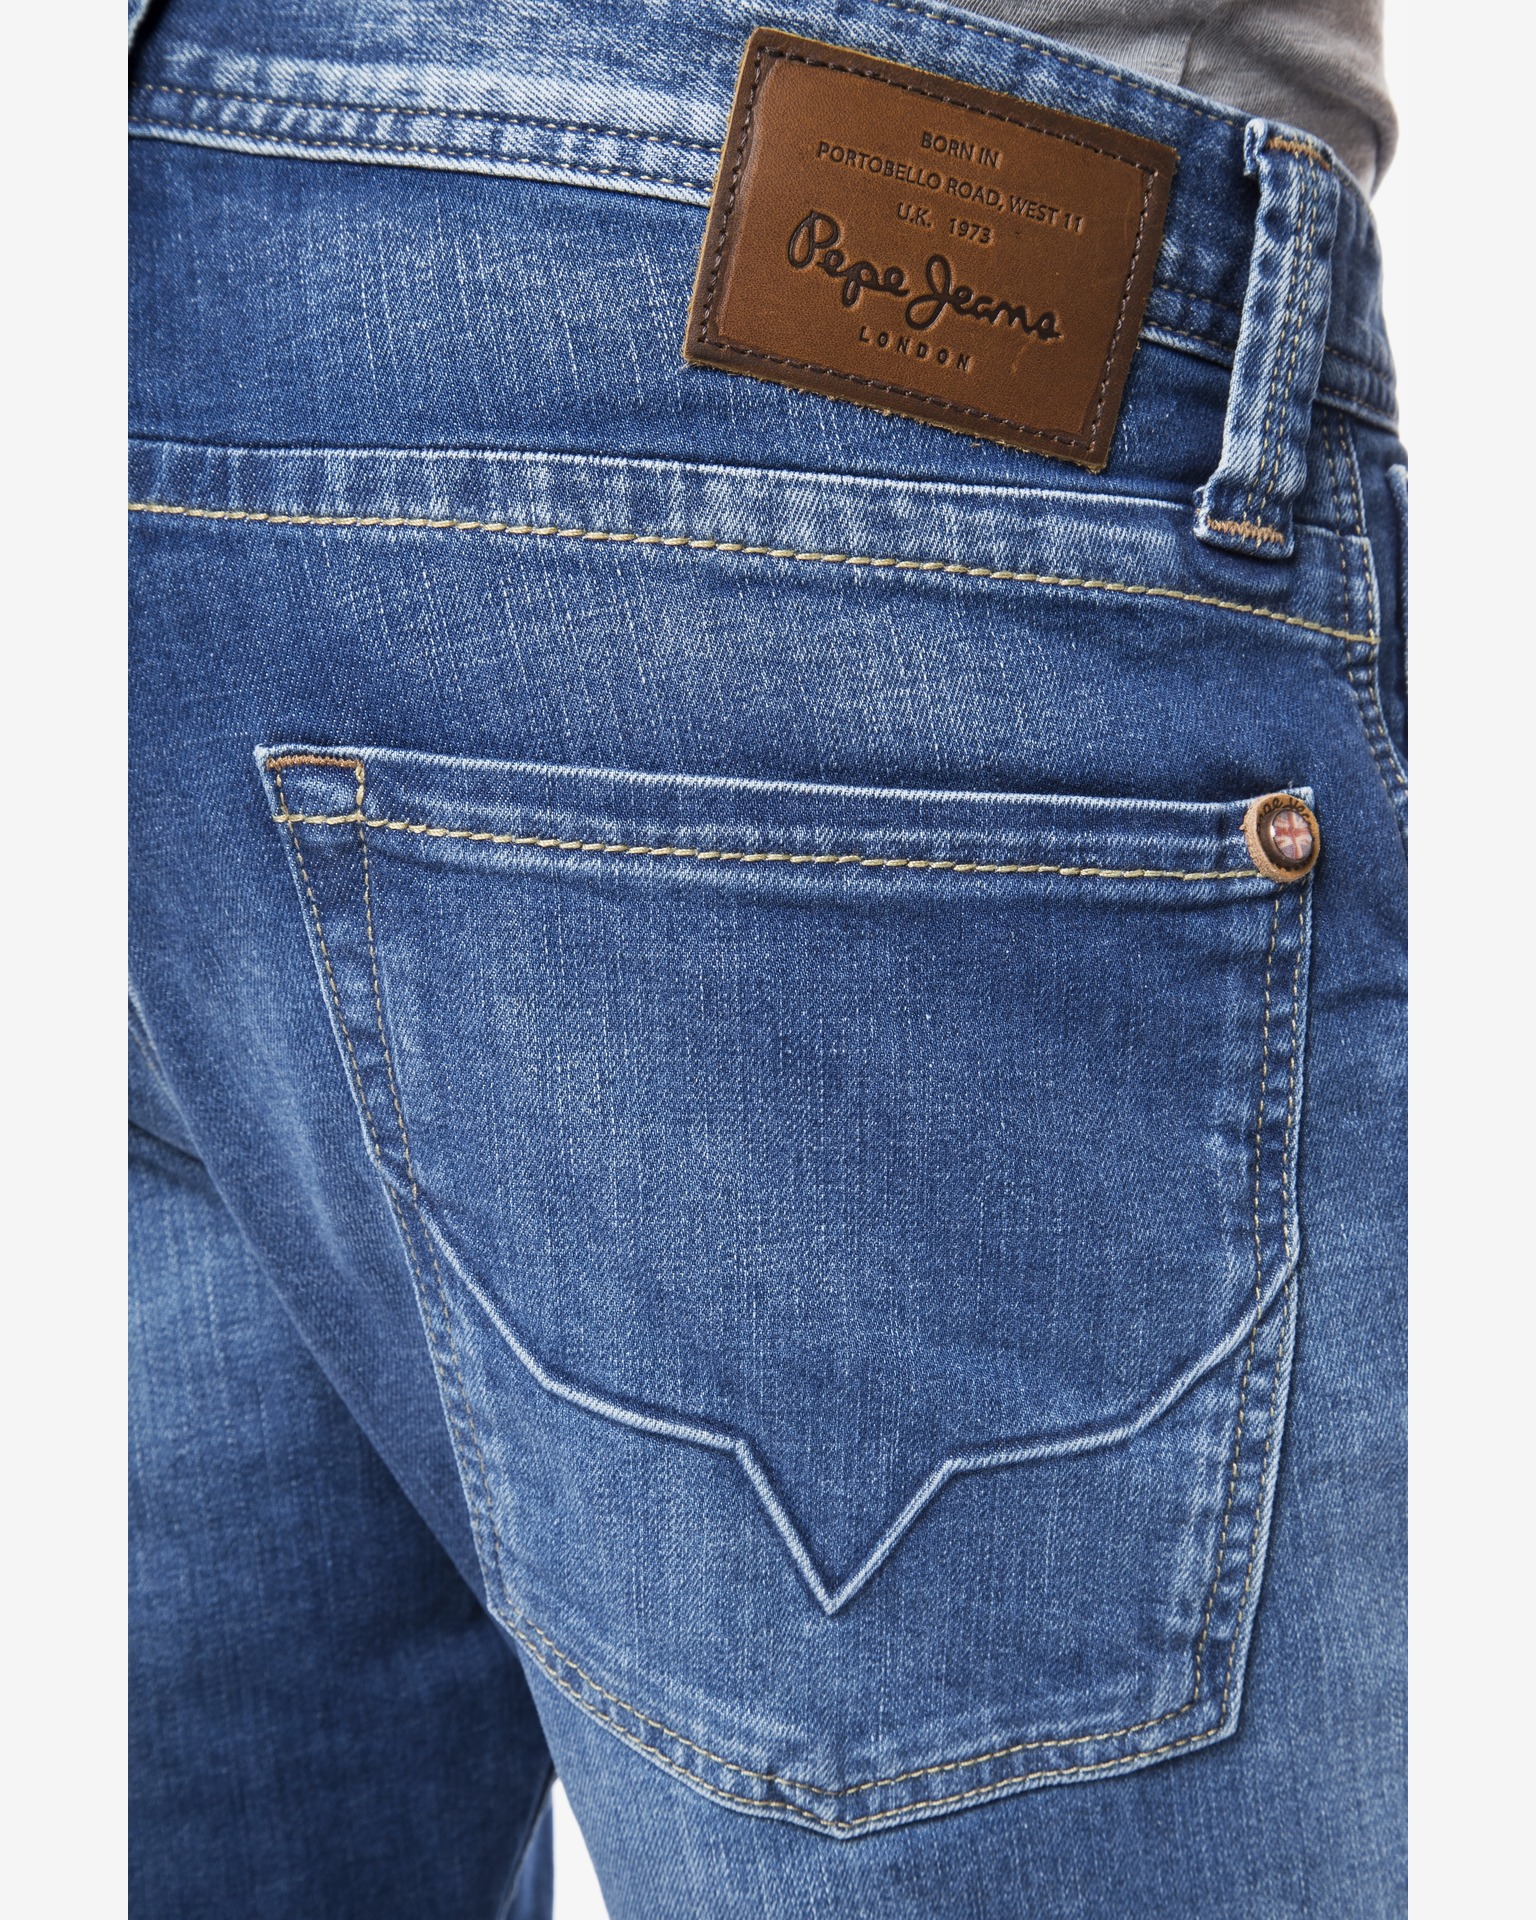 pepe jeans cash regular fit regular waist